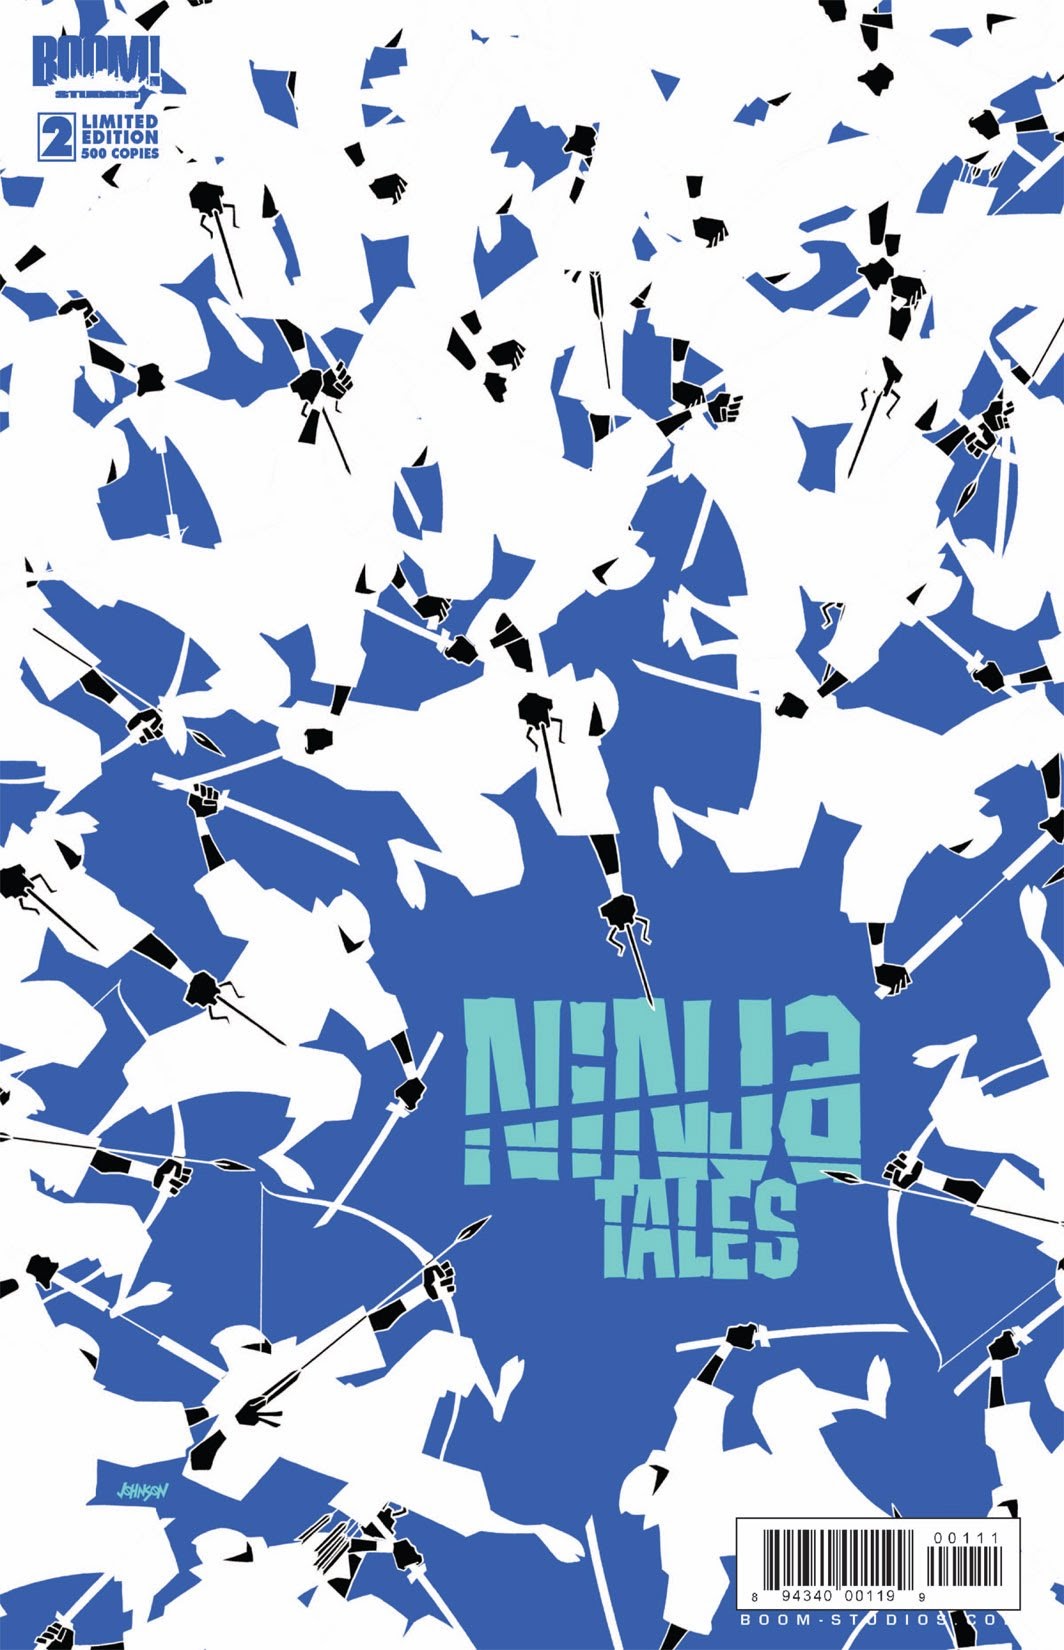 Read online Ninja Tales comic -  Issue #2 - 2